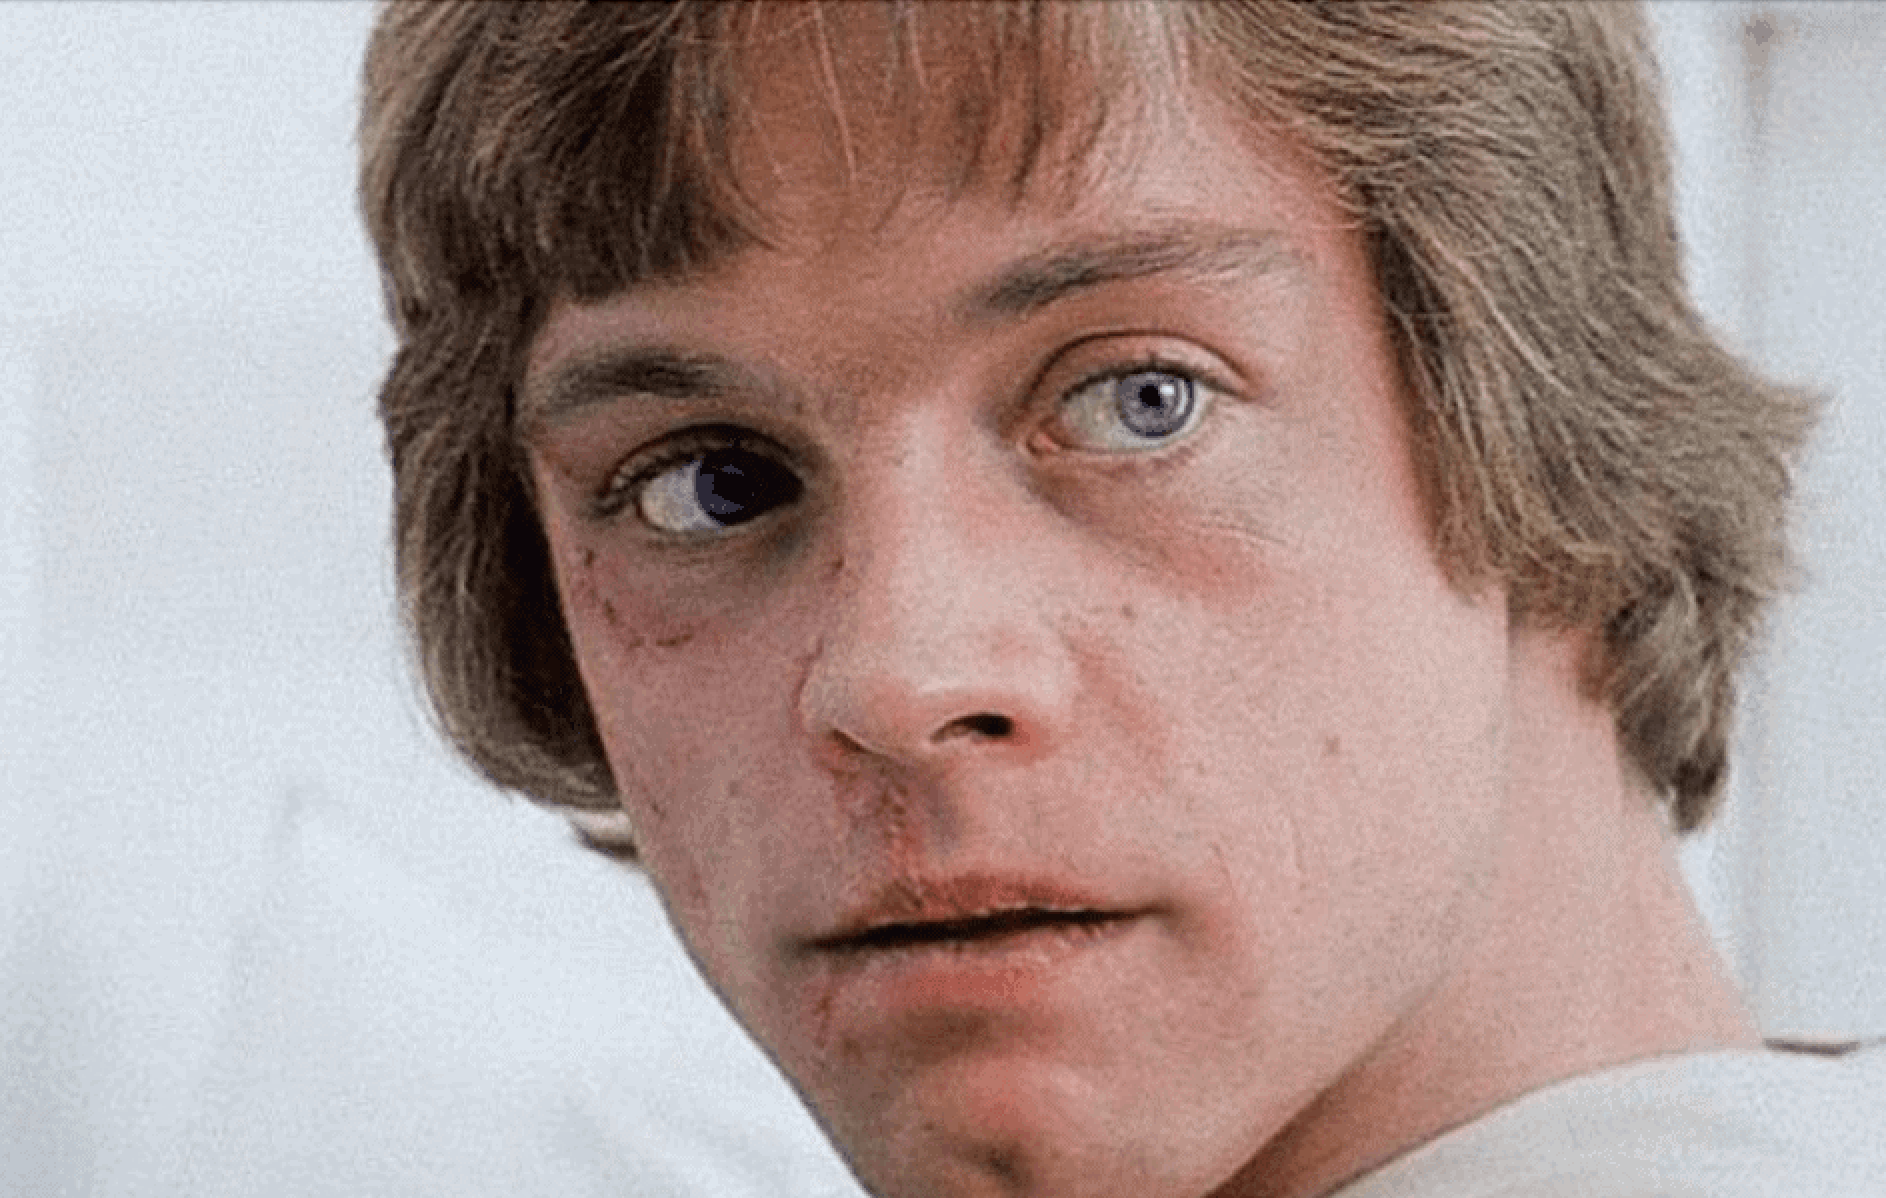 Closeup of Luke Skywalker